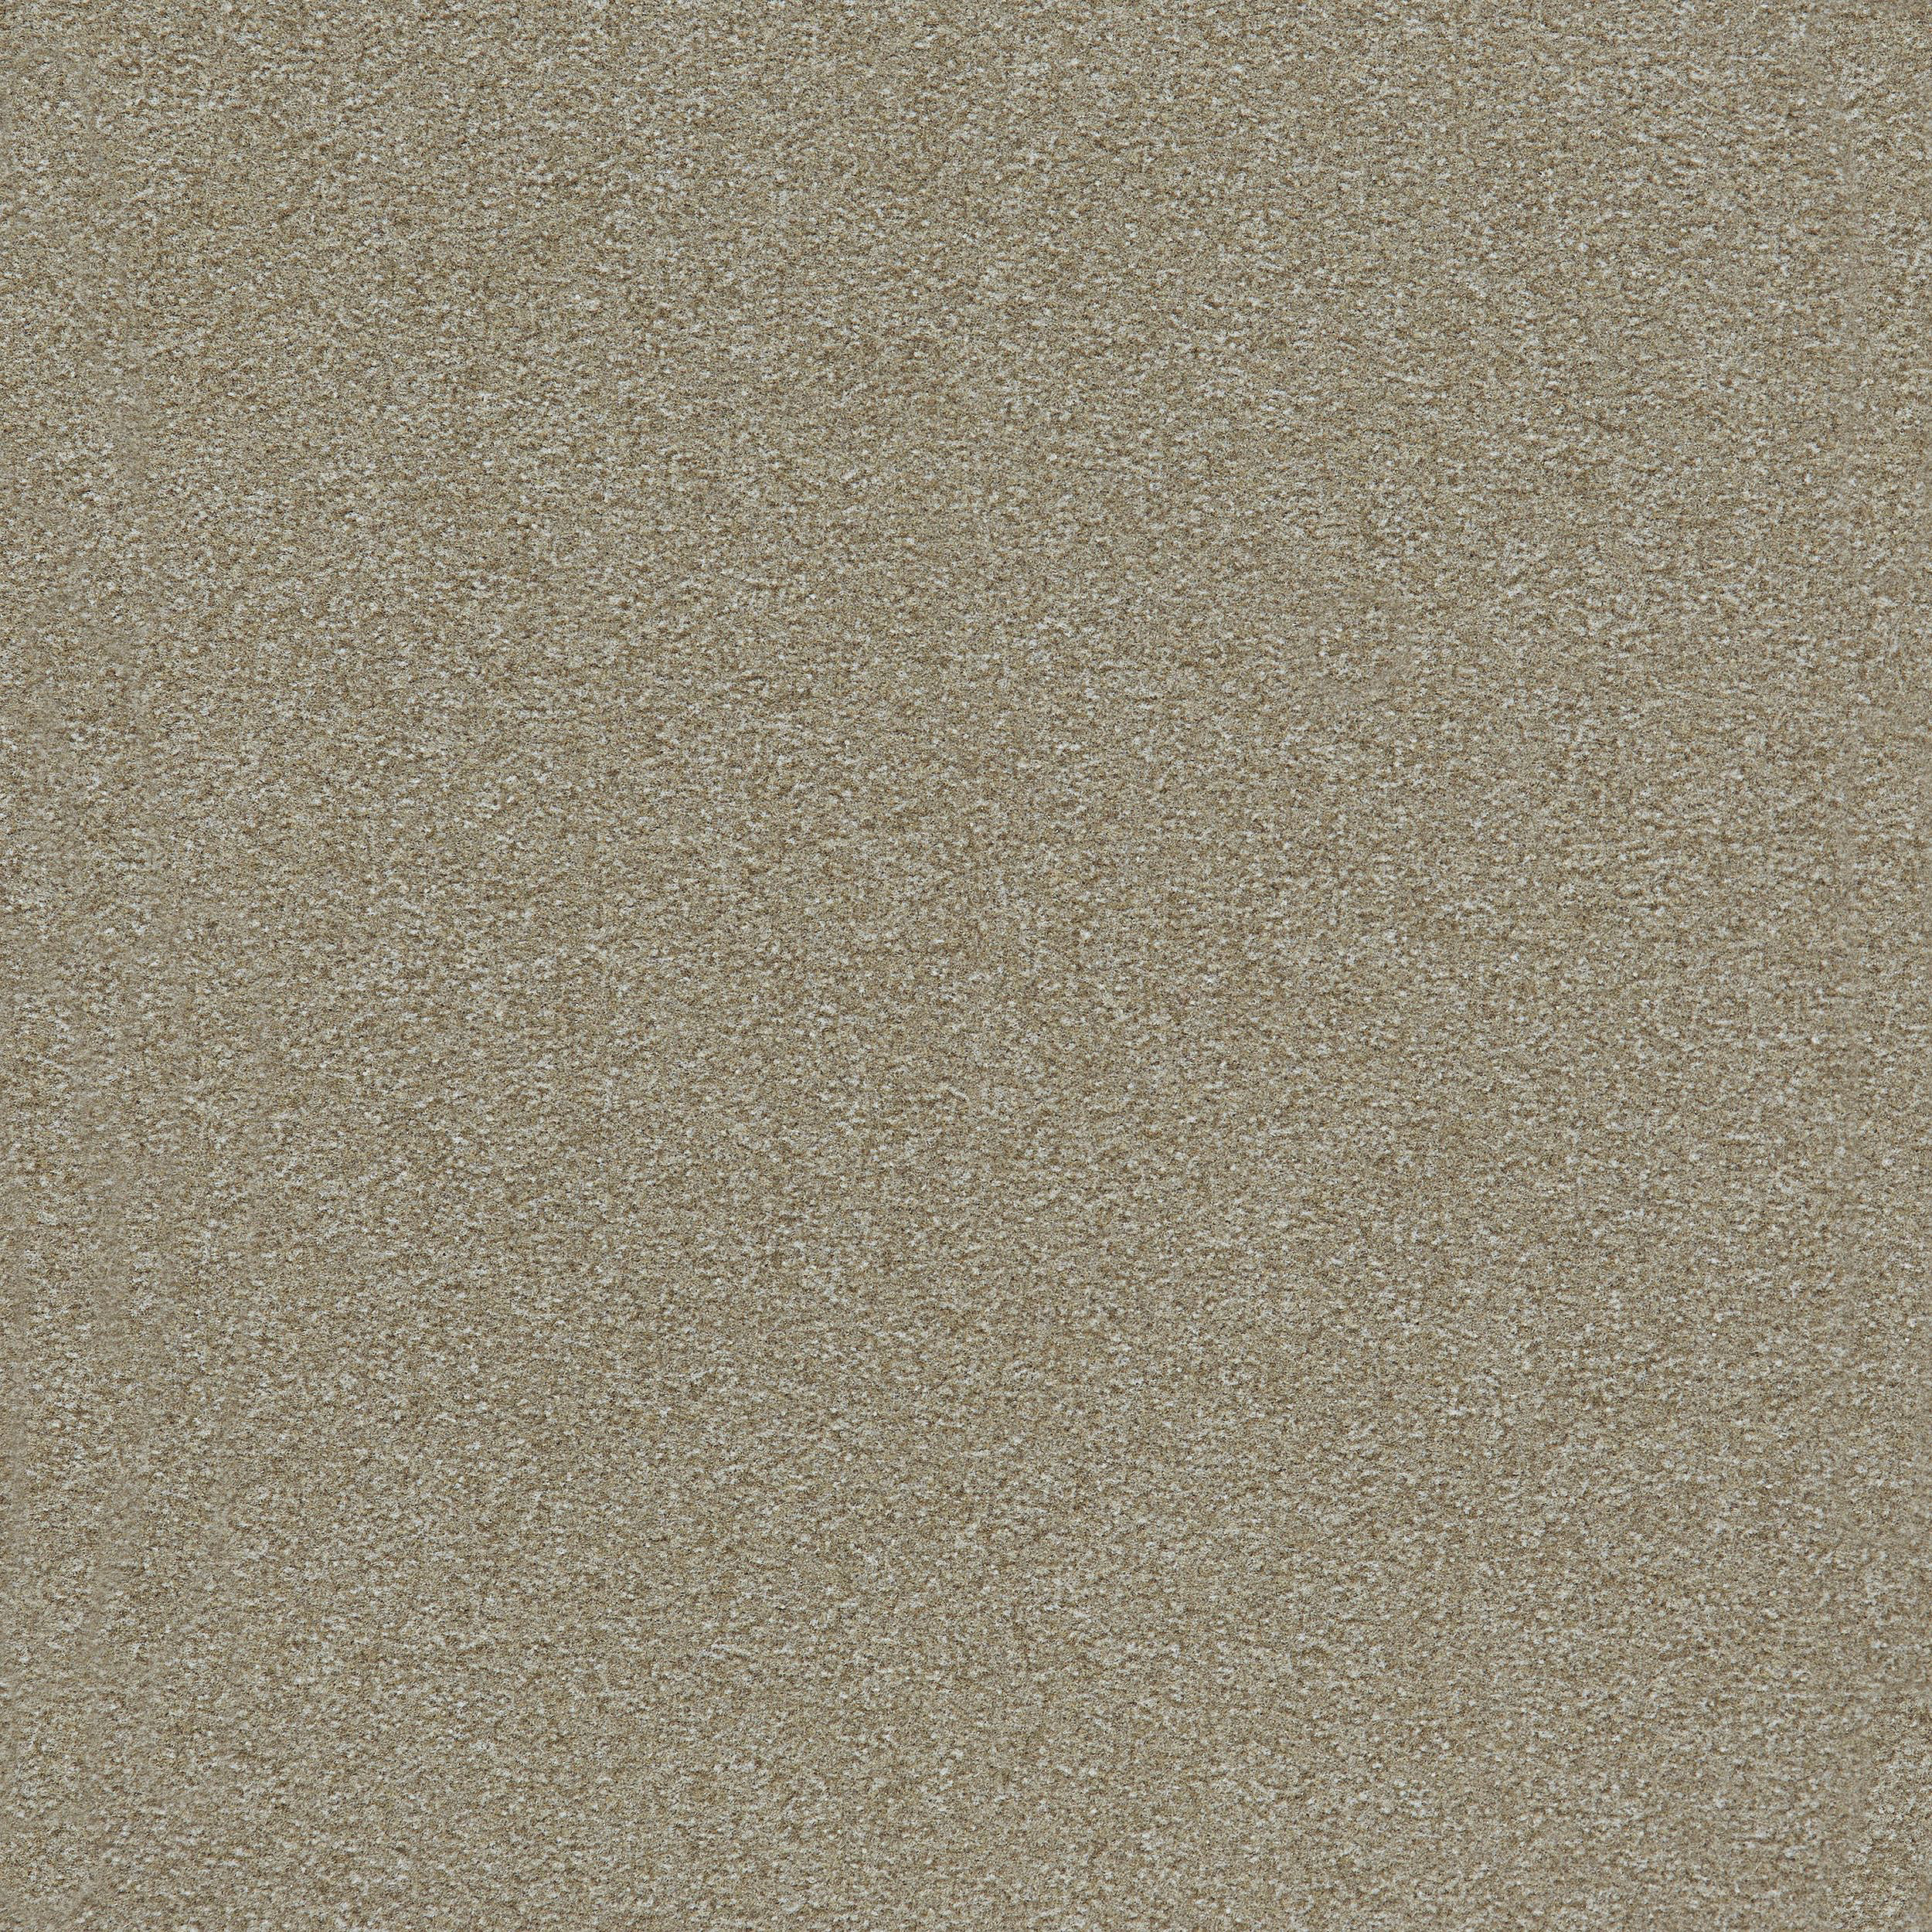 Heuga 725 Carpet Tile In Oyster image number 9